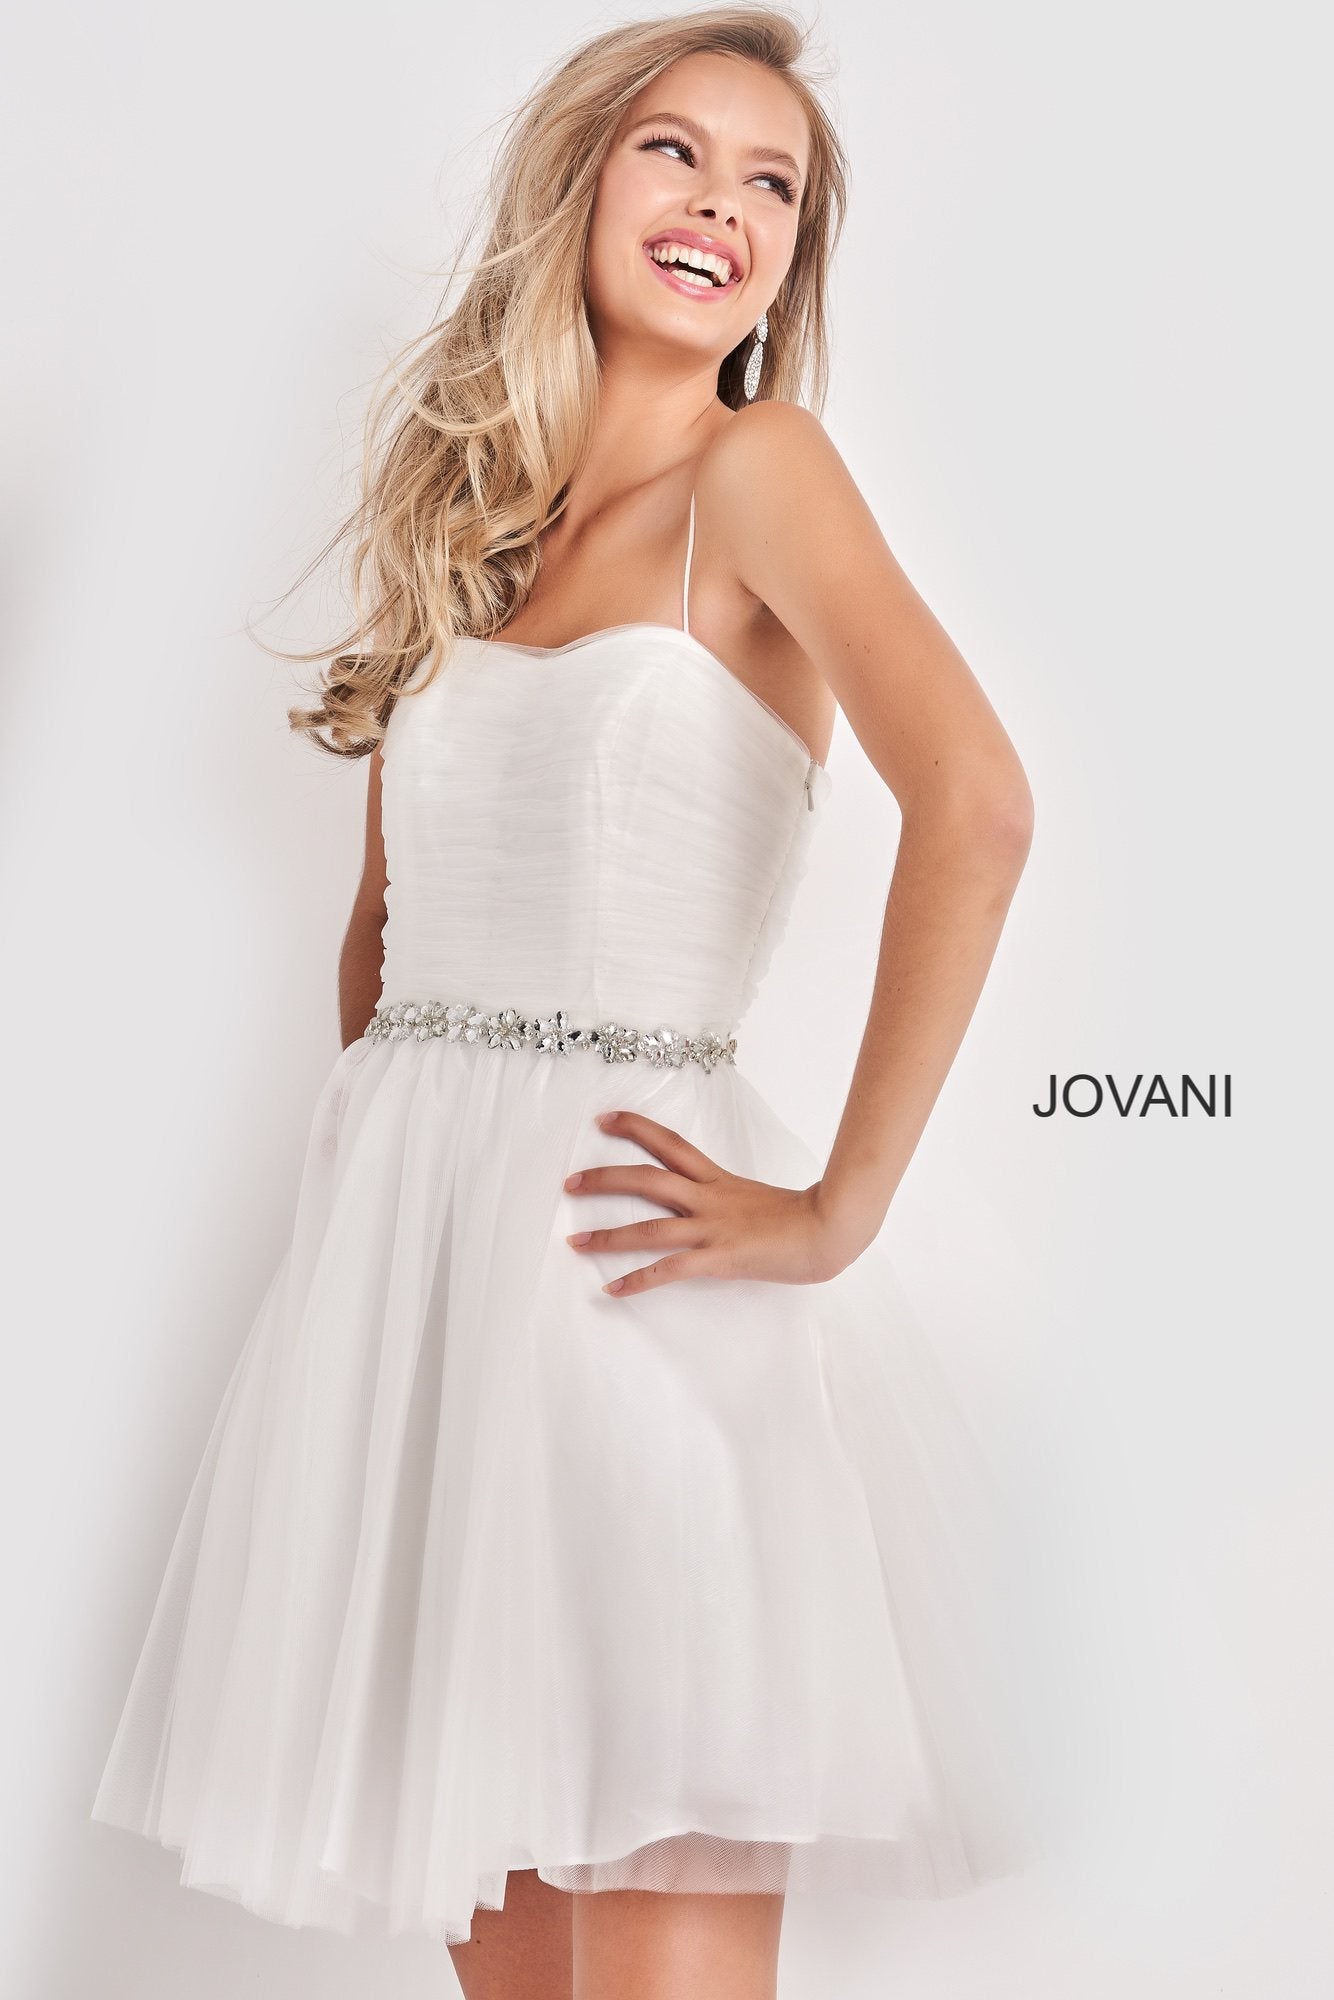 Jovani Kids K3641 Short Embellished Girls Formal Party Dress Cocktail Gown